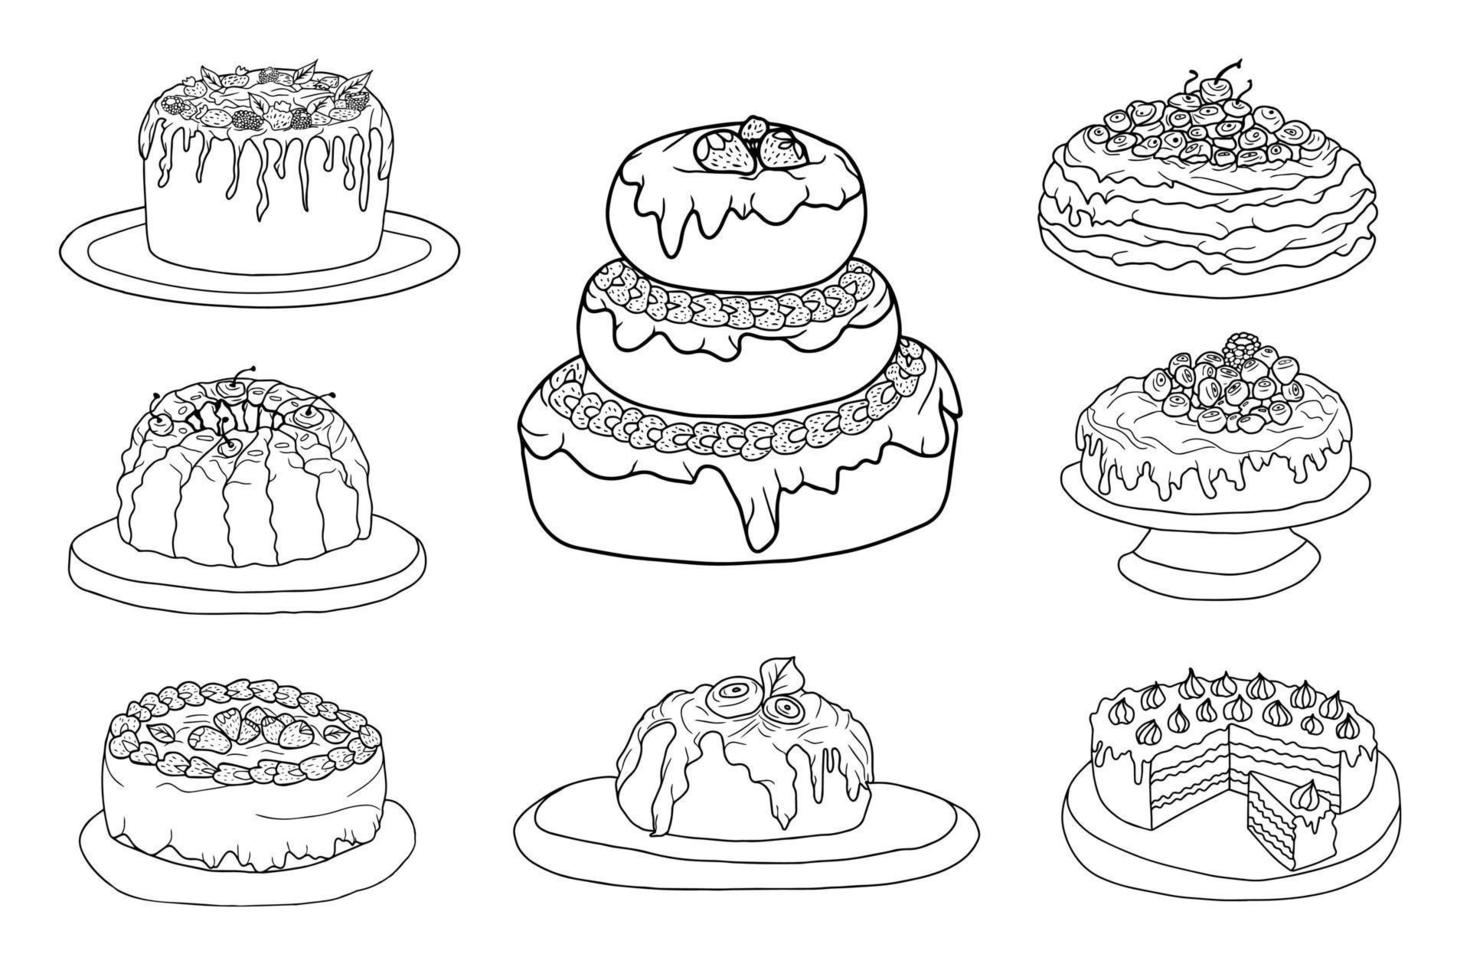 Reihe von handgezeichneten Kuchen mit Sahne, Streuseln und Beeren. isolierte schwarze auf weißen elemente für design vektor